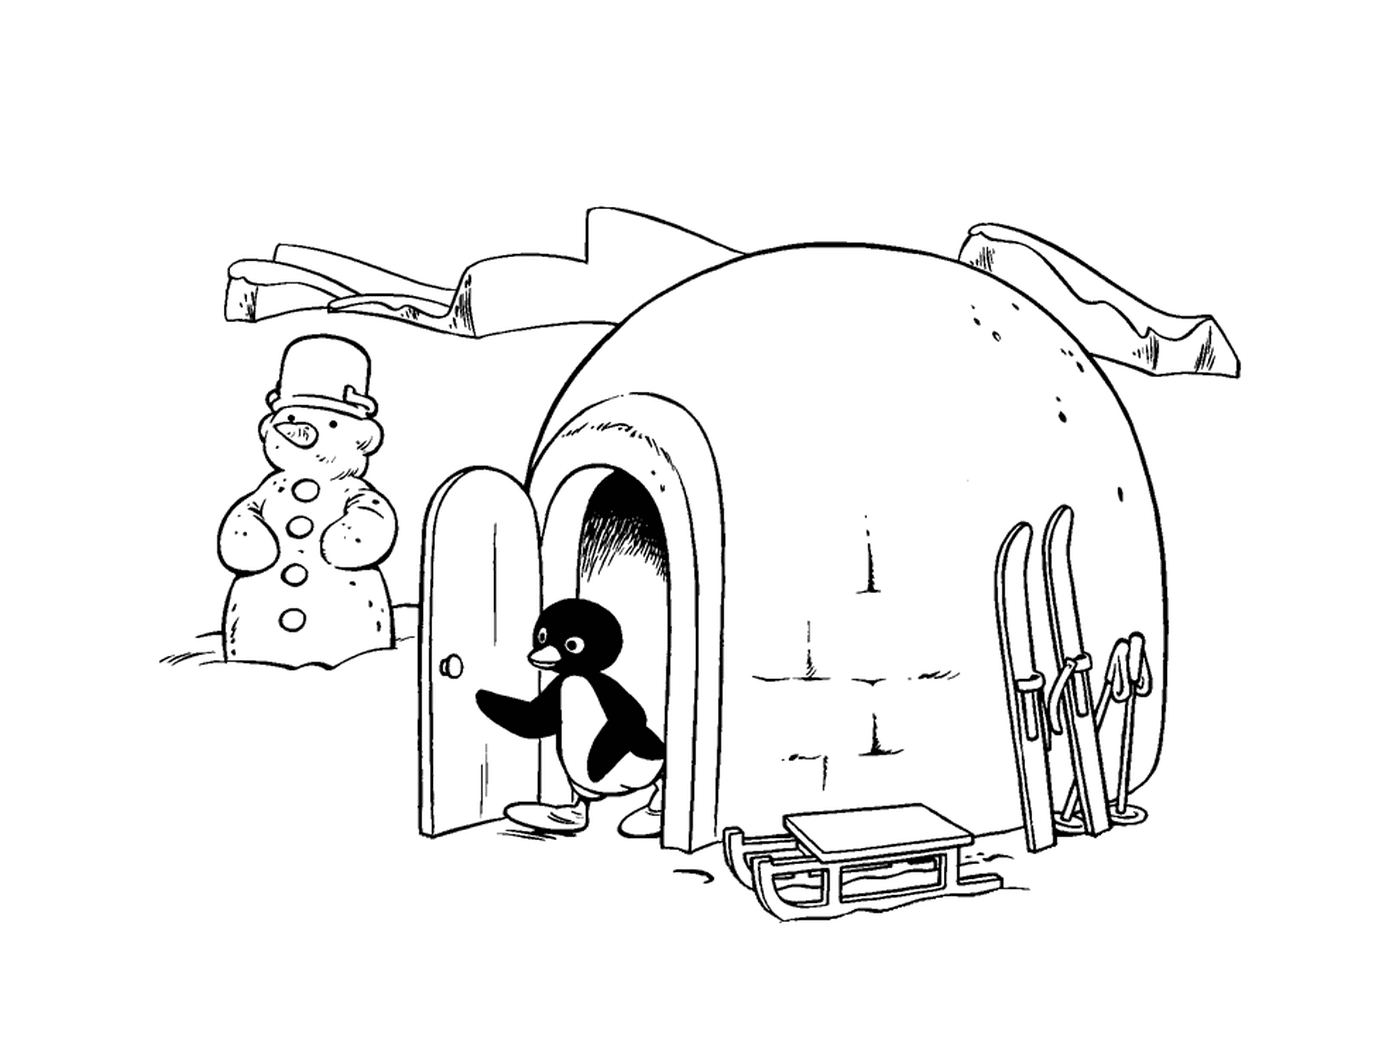  Pingu saindo de seu iglu 